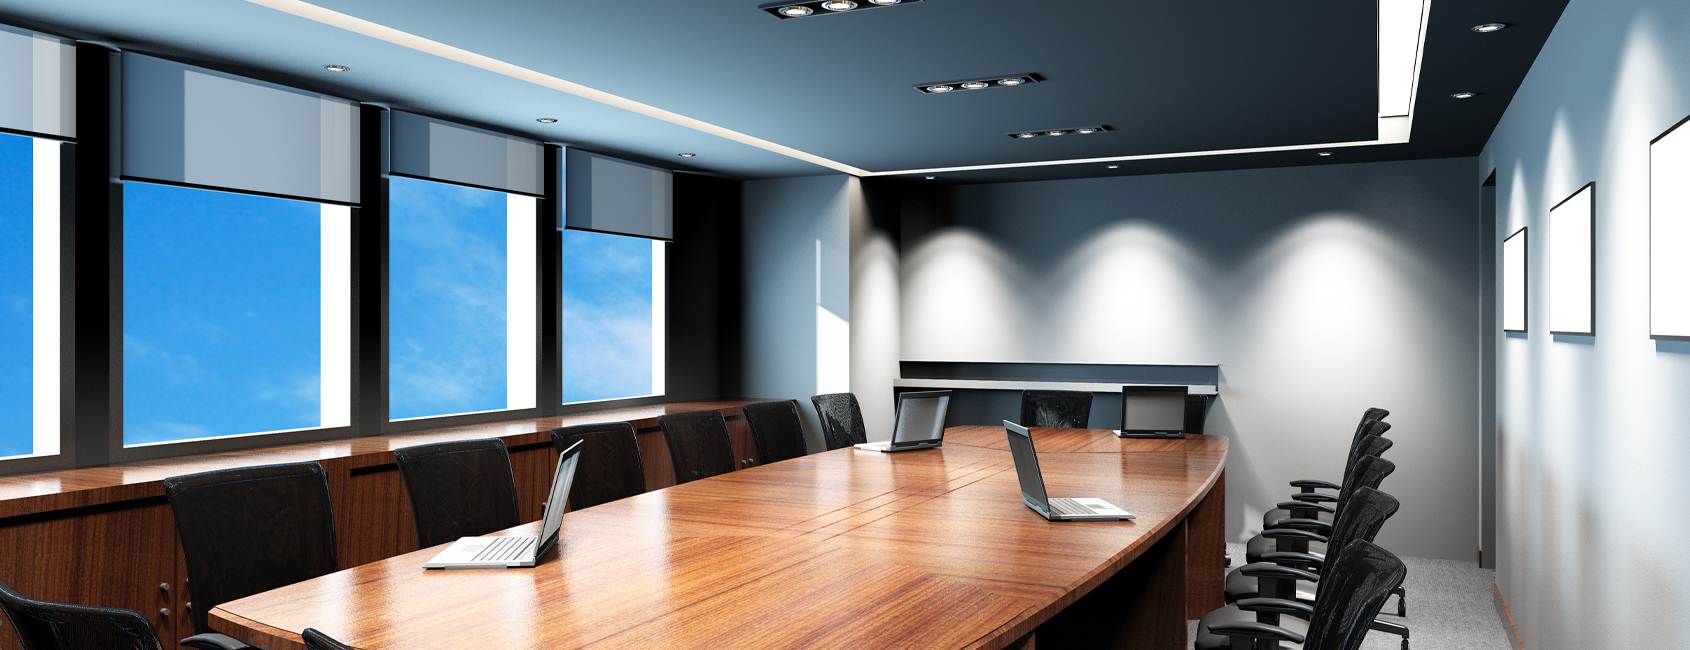 Boardroom/Conference Room